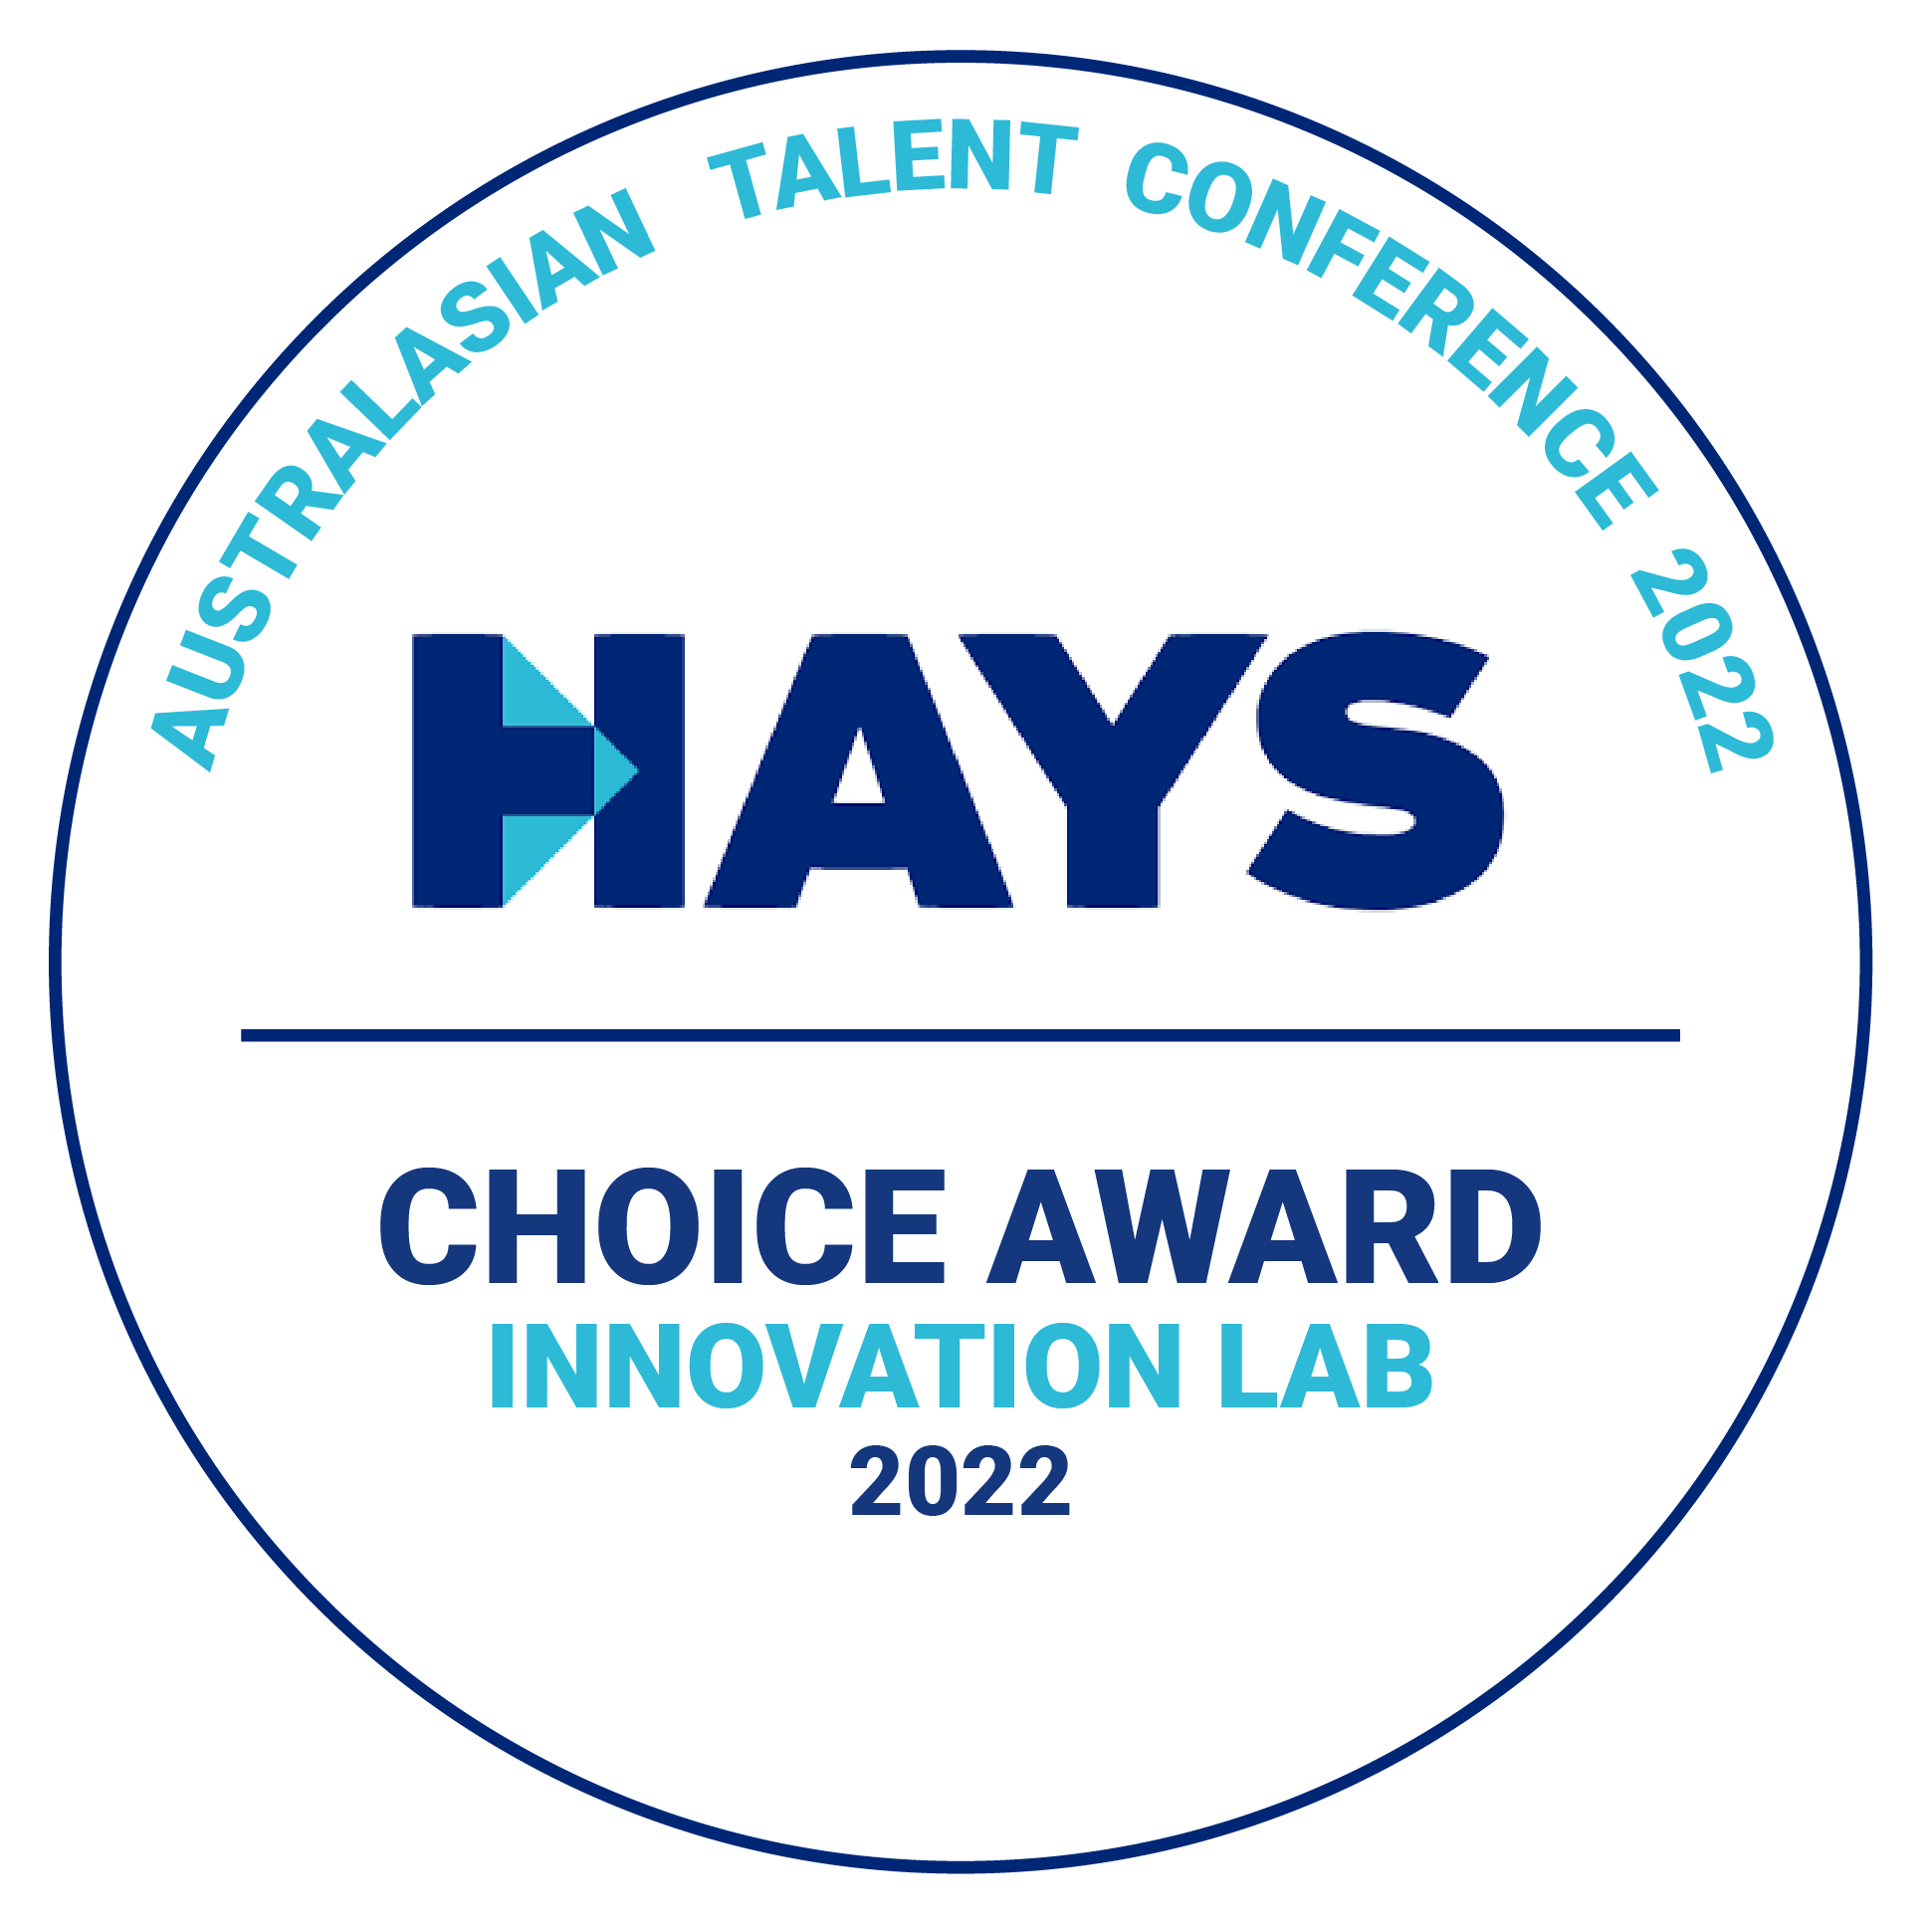 HAYS Choice Award Innovation Lab Winner 2022